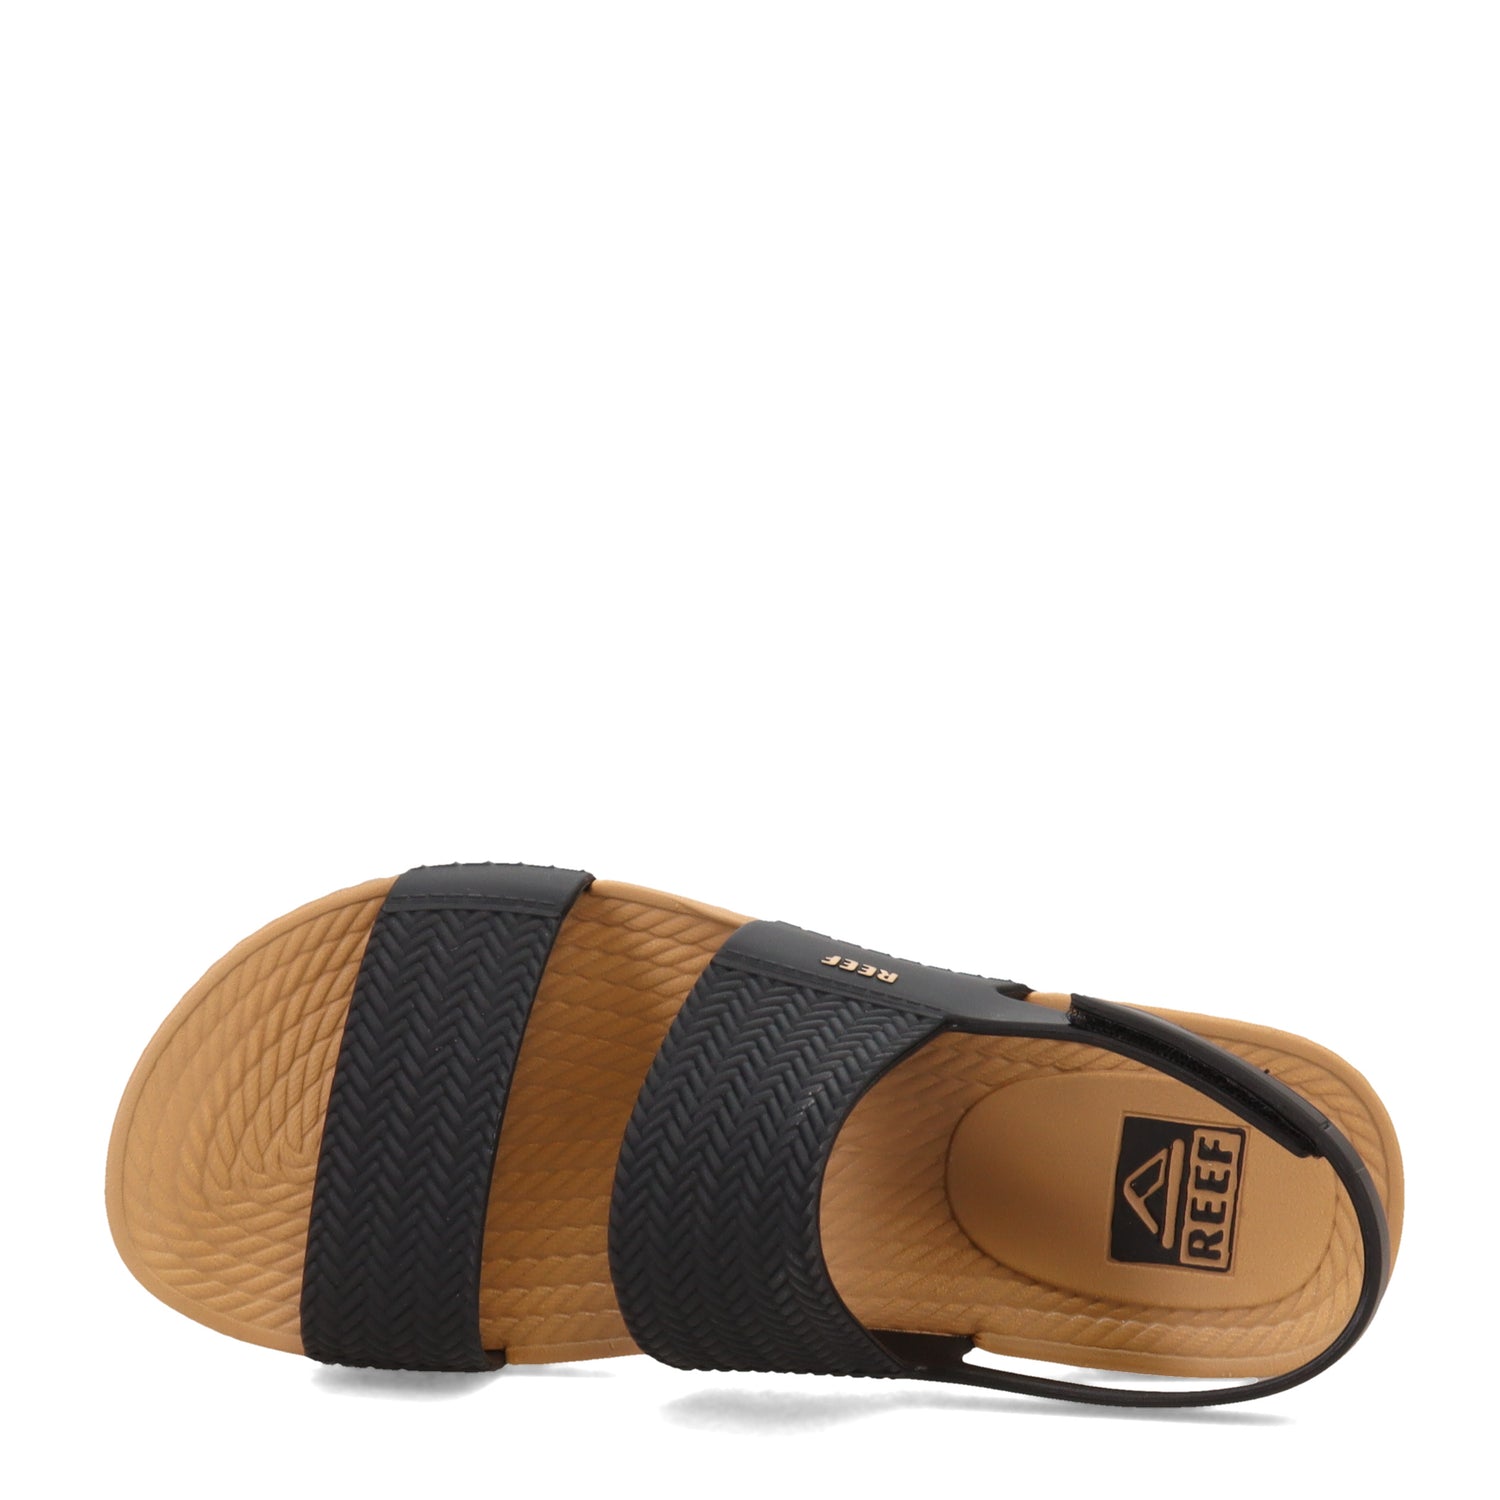 Peltz Shoes  Women's Reef Water Vista Sandal Black/Tan CI8573